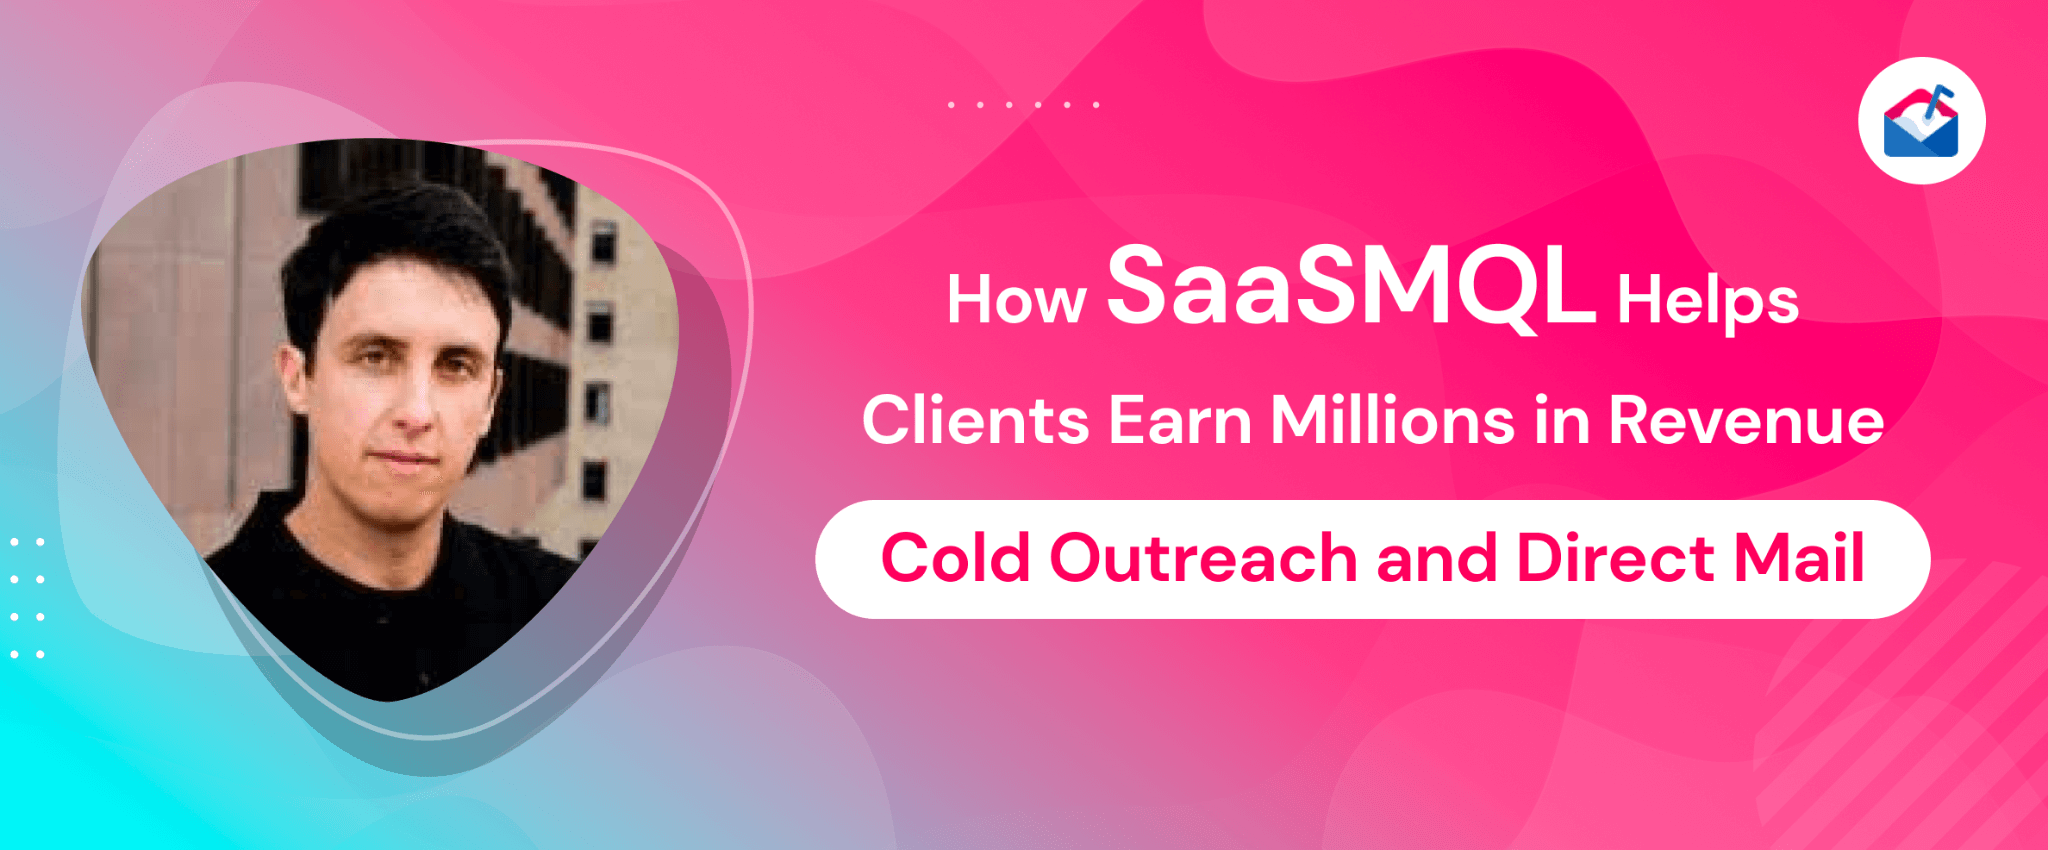 SaaSMQL Helps Clients Earn Millions